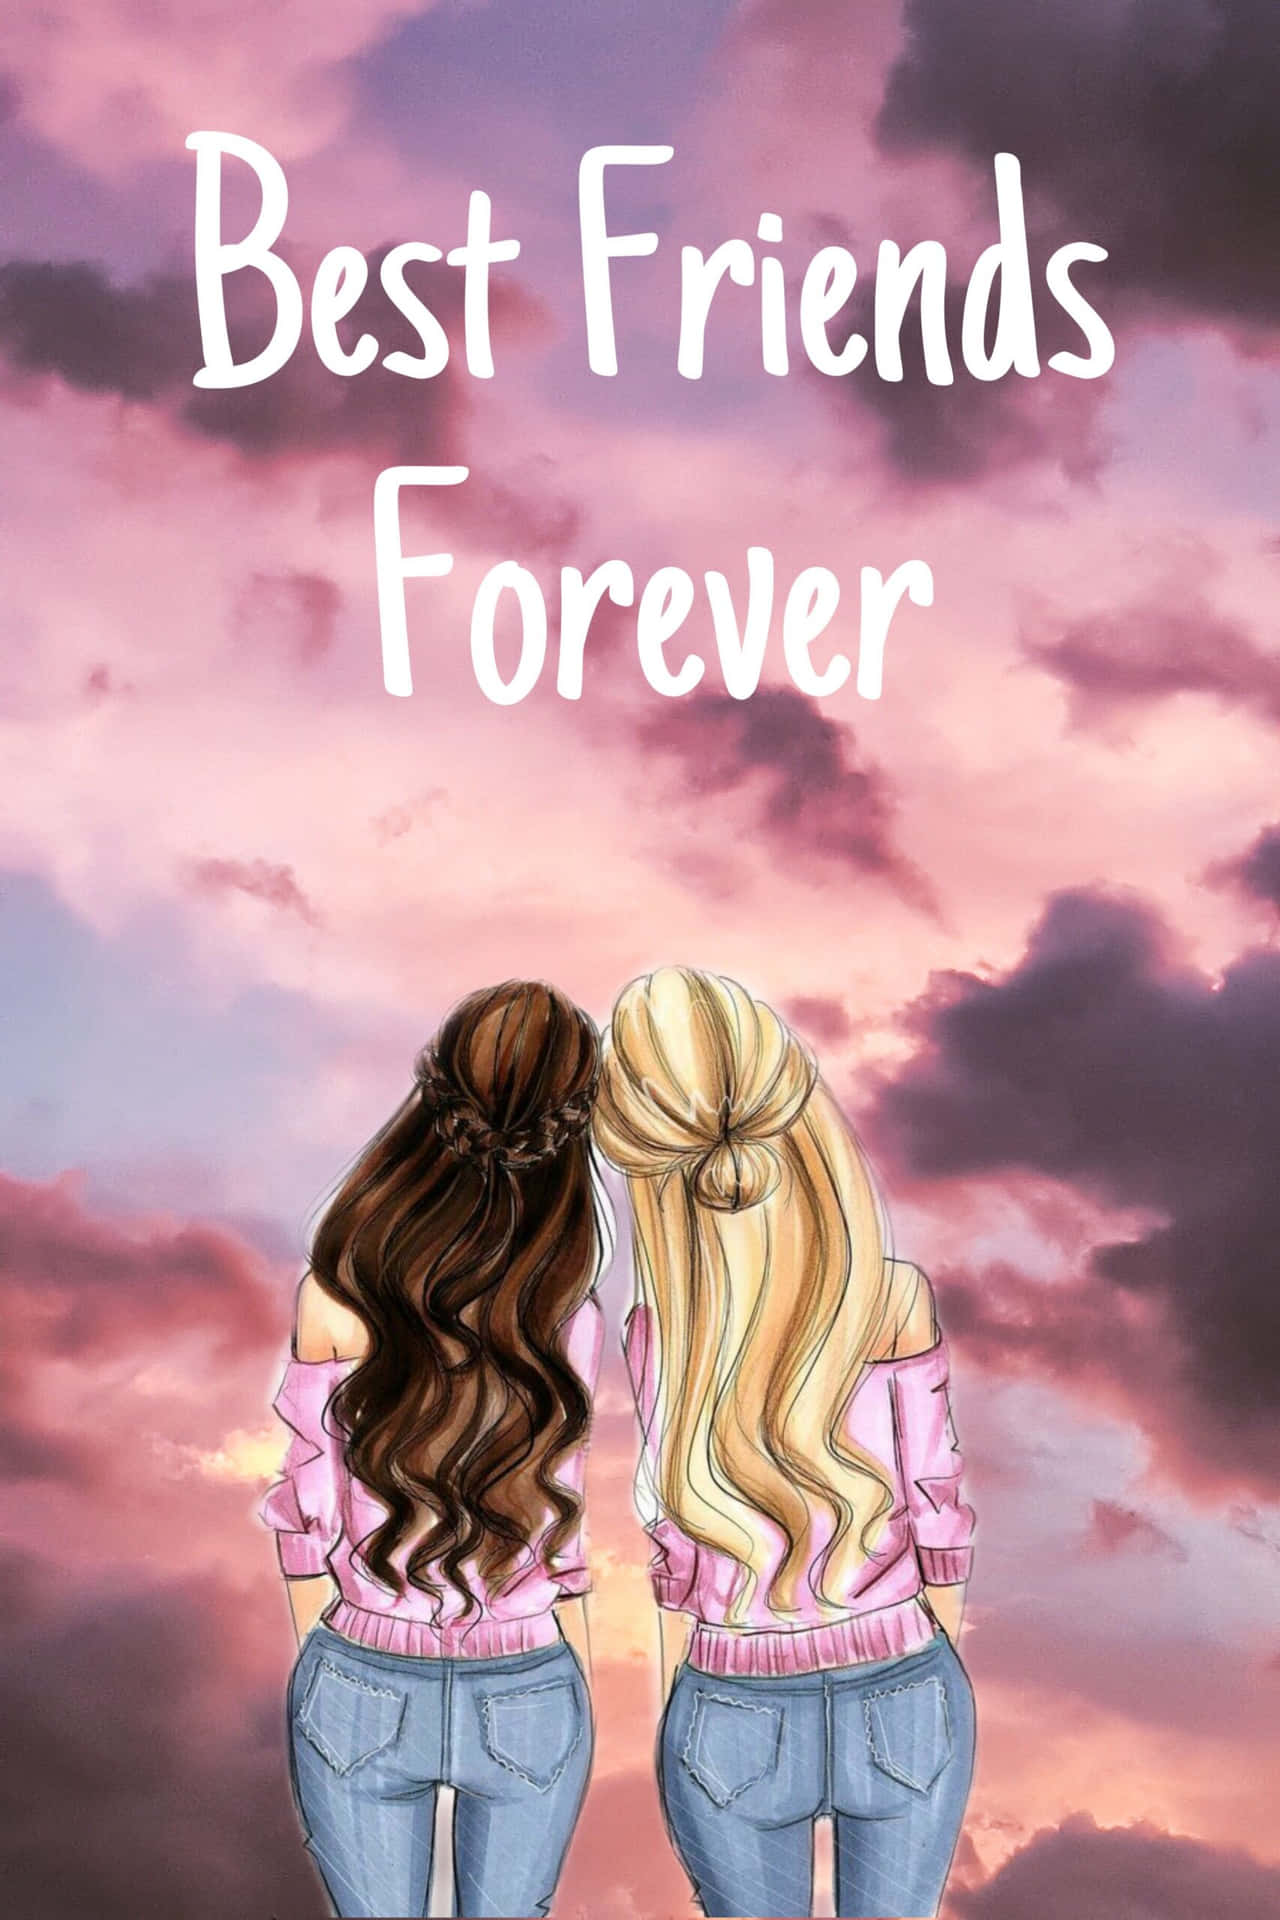 Download Free Best Friends Forever Backgrounds  PixelsTalkNet